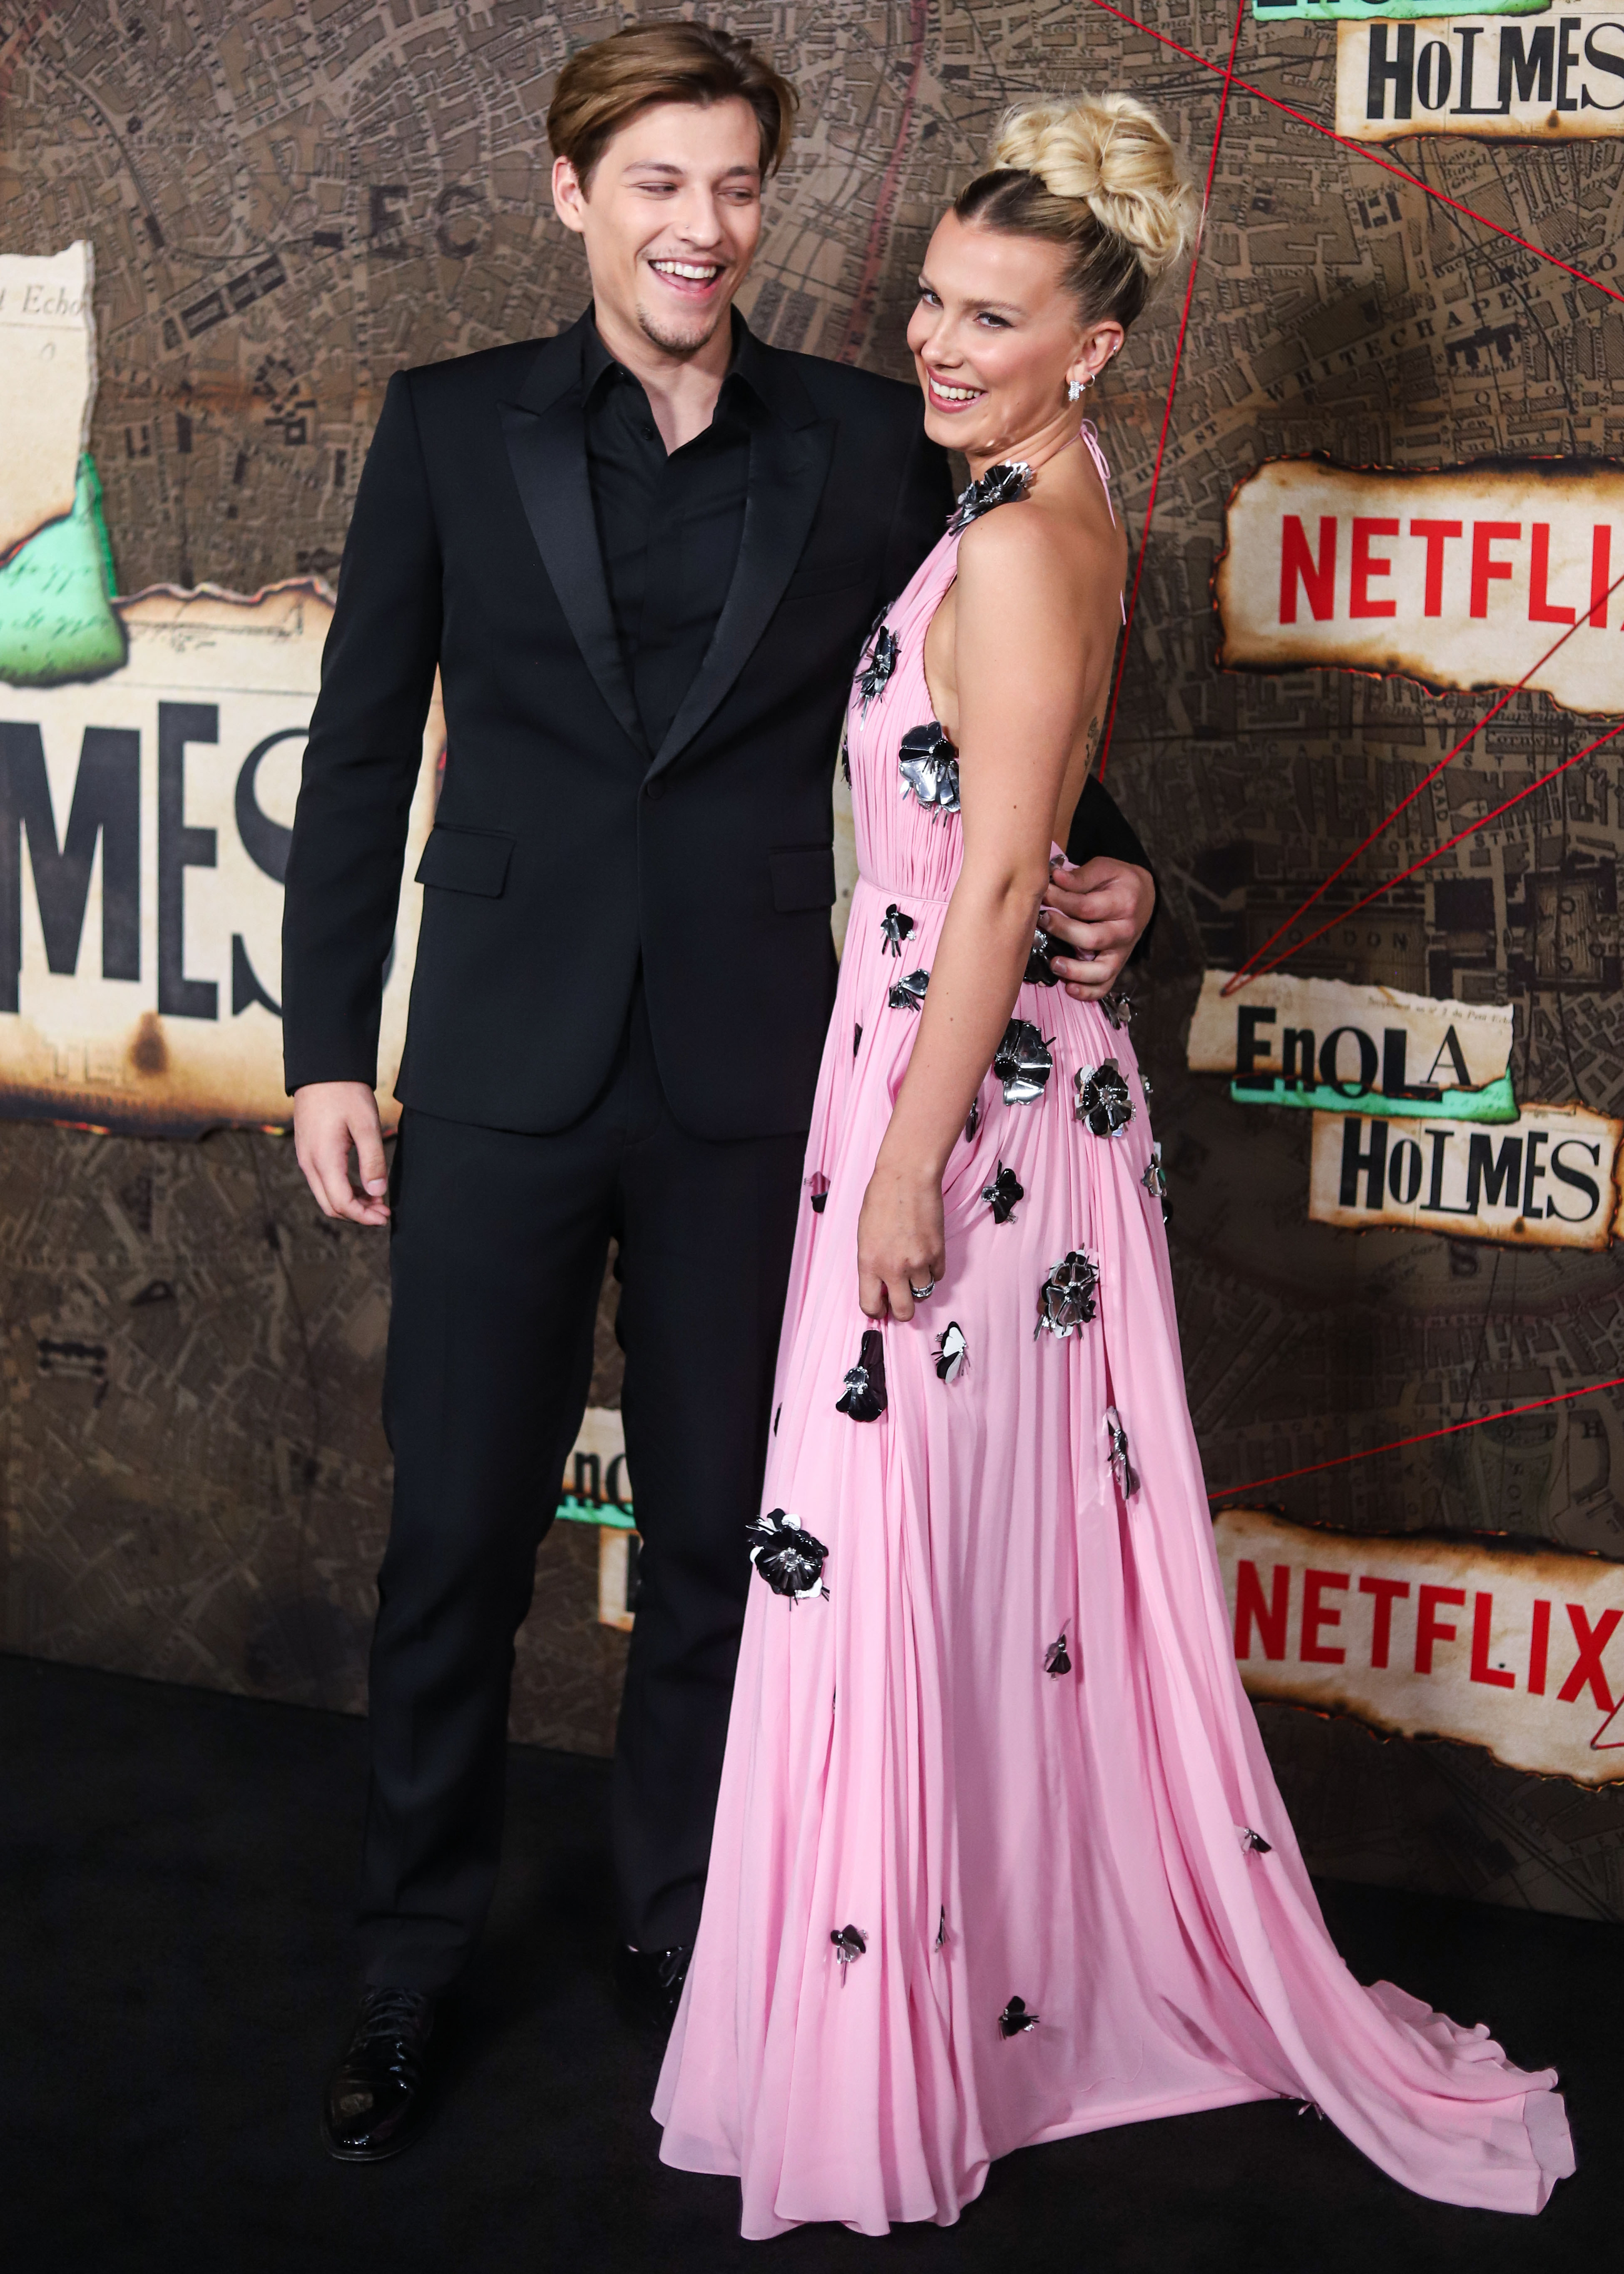 Millie Bobby Brown, Jake Bongiovi Hit the BAFTAs Red Carpet: Pics